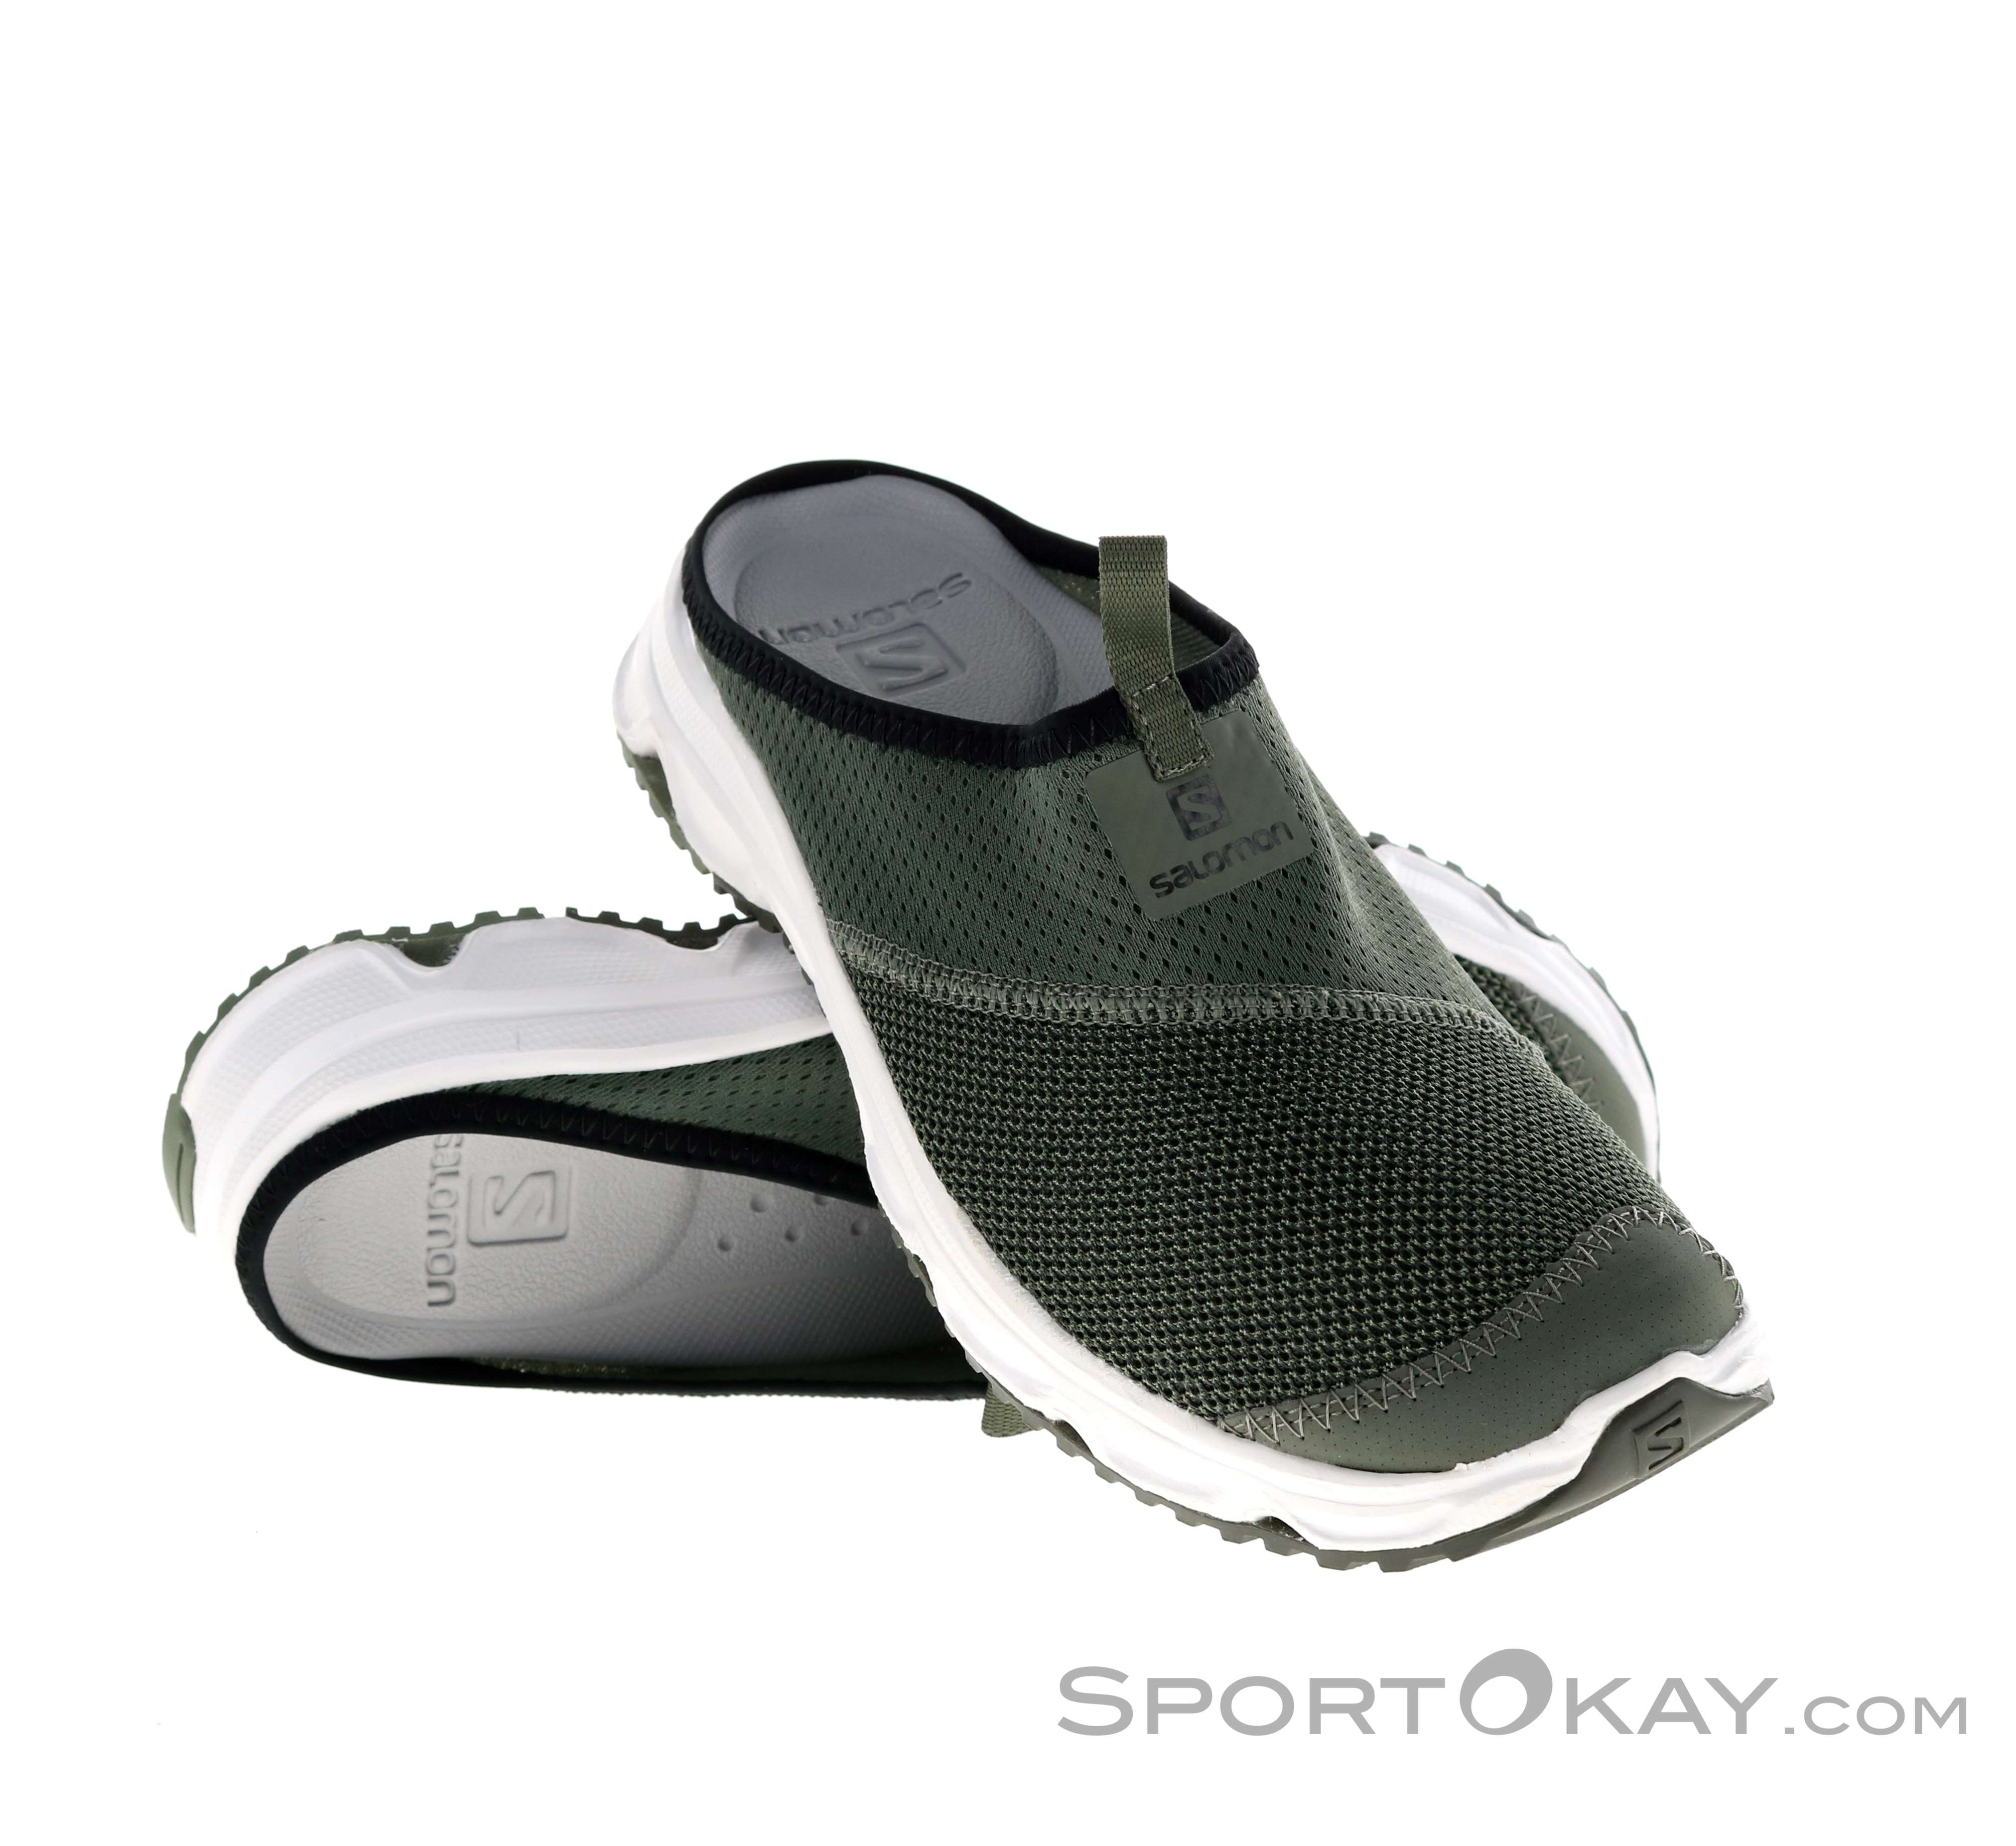 offset leveren positie Salomon RX Slide 4.0 Mens Leisure Sandals - Leisure Shoes - Shoes & Poles -  Outdoor - All